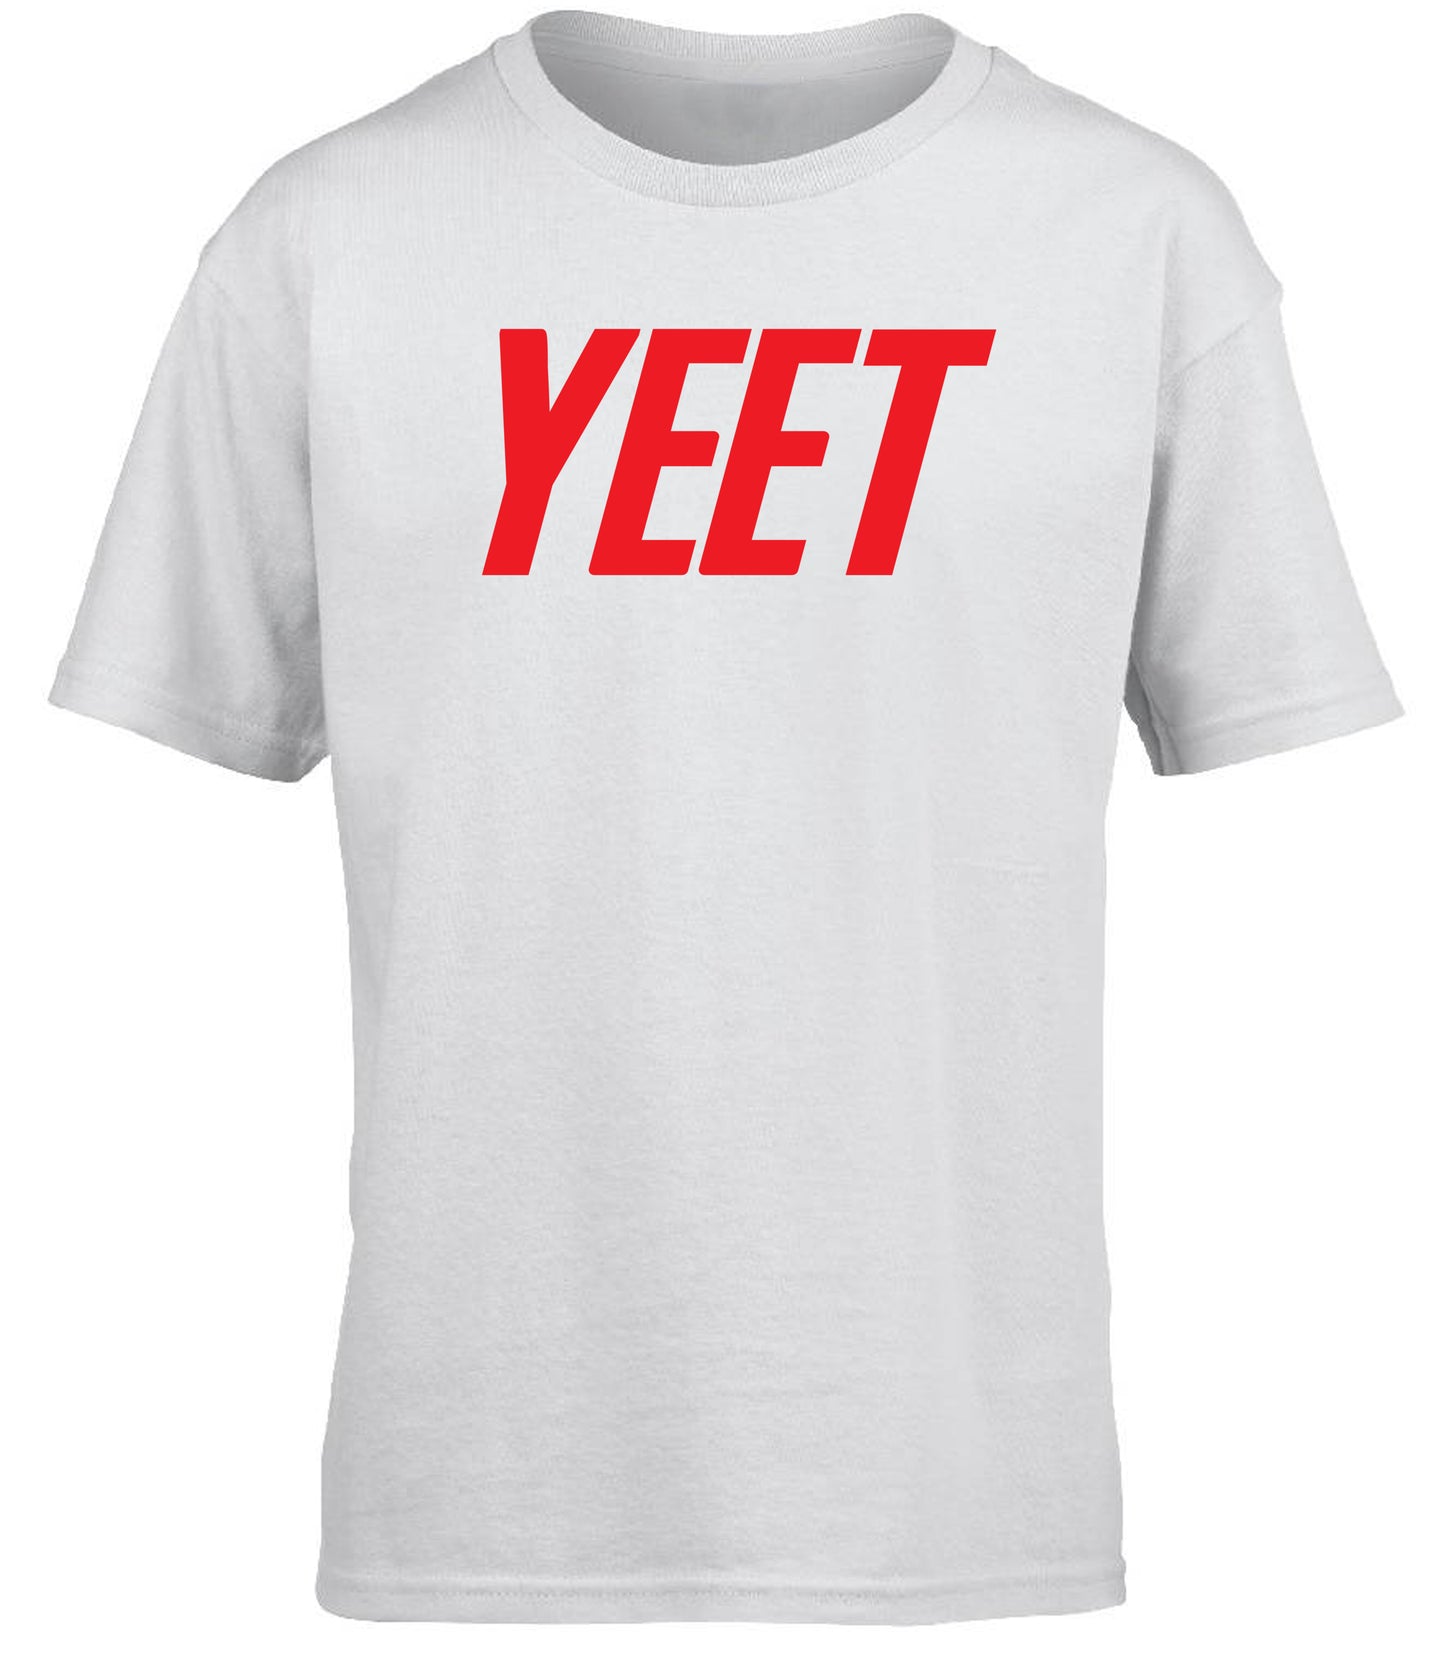 Yeet children's T-shirt